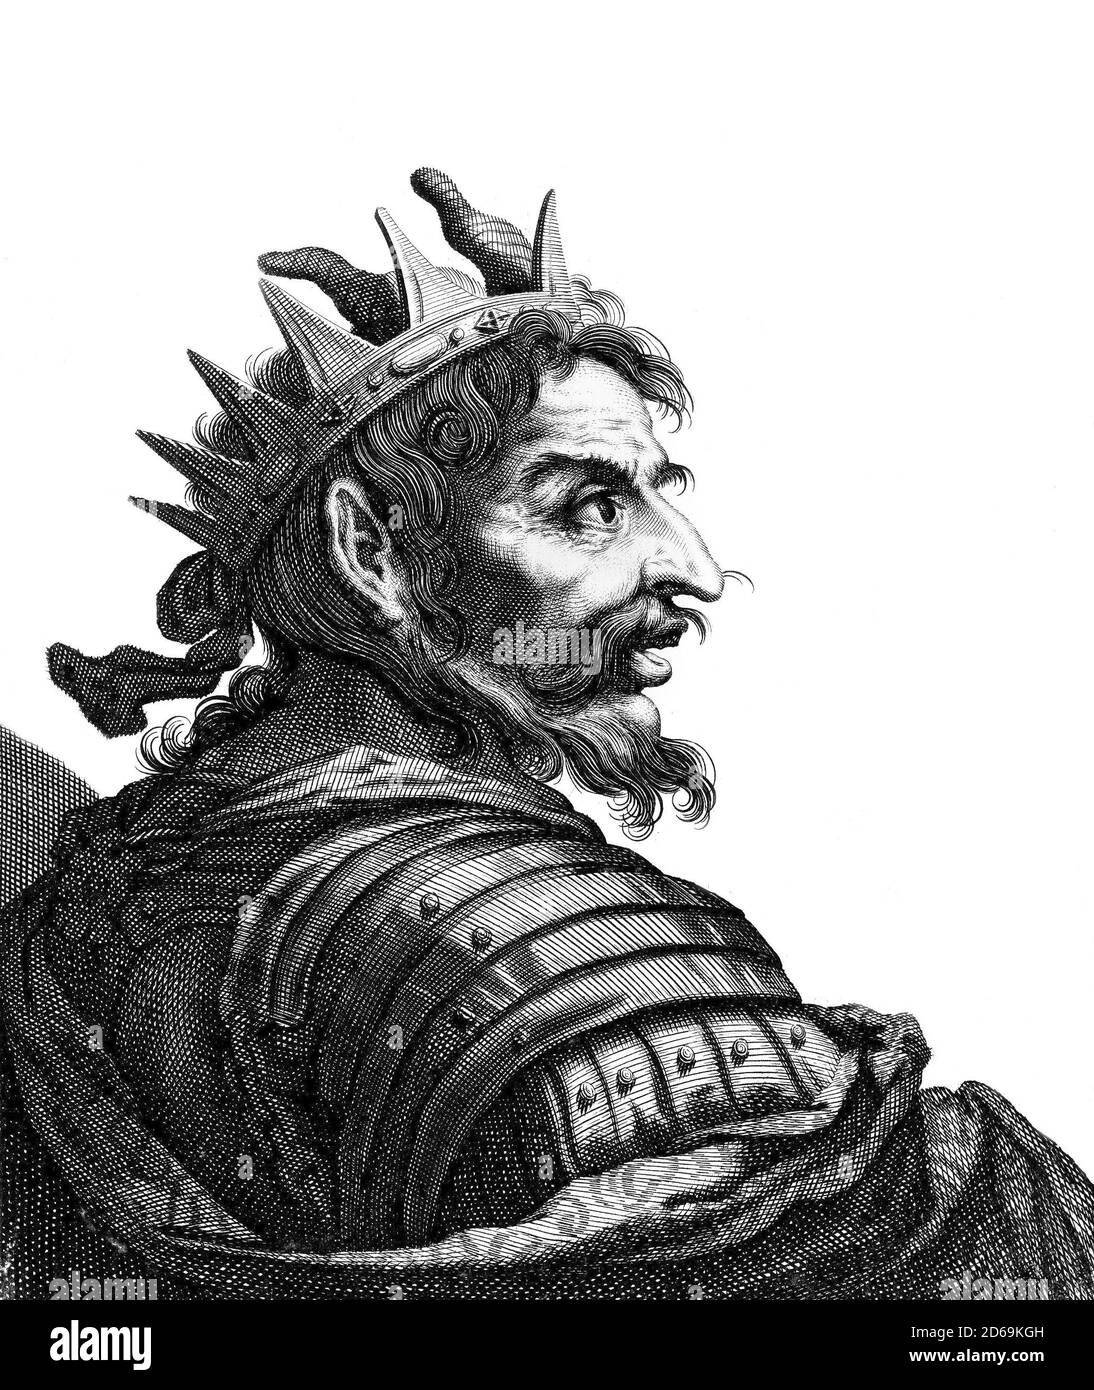 Attila der Hunne. Porträt von Attila ( c. 406–453), häufig Attila der Hunne genannt, Herrscher der Hunnen von 434 bis zu seinem Tod im März 453, Stich nach Claude Vignon, um 1610–1647 Stockfoto